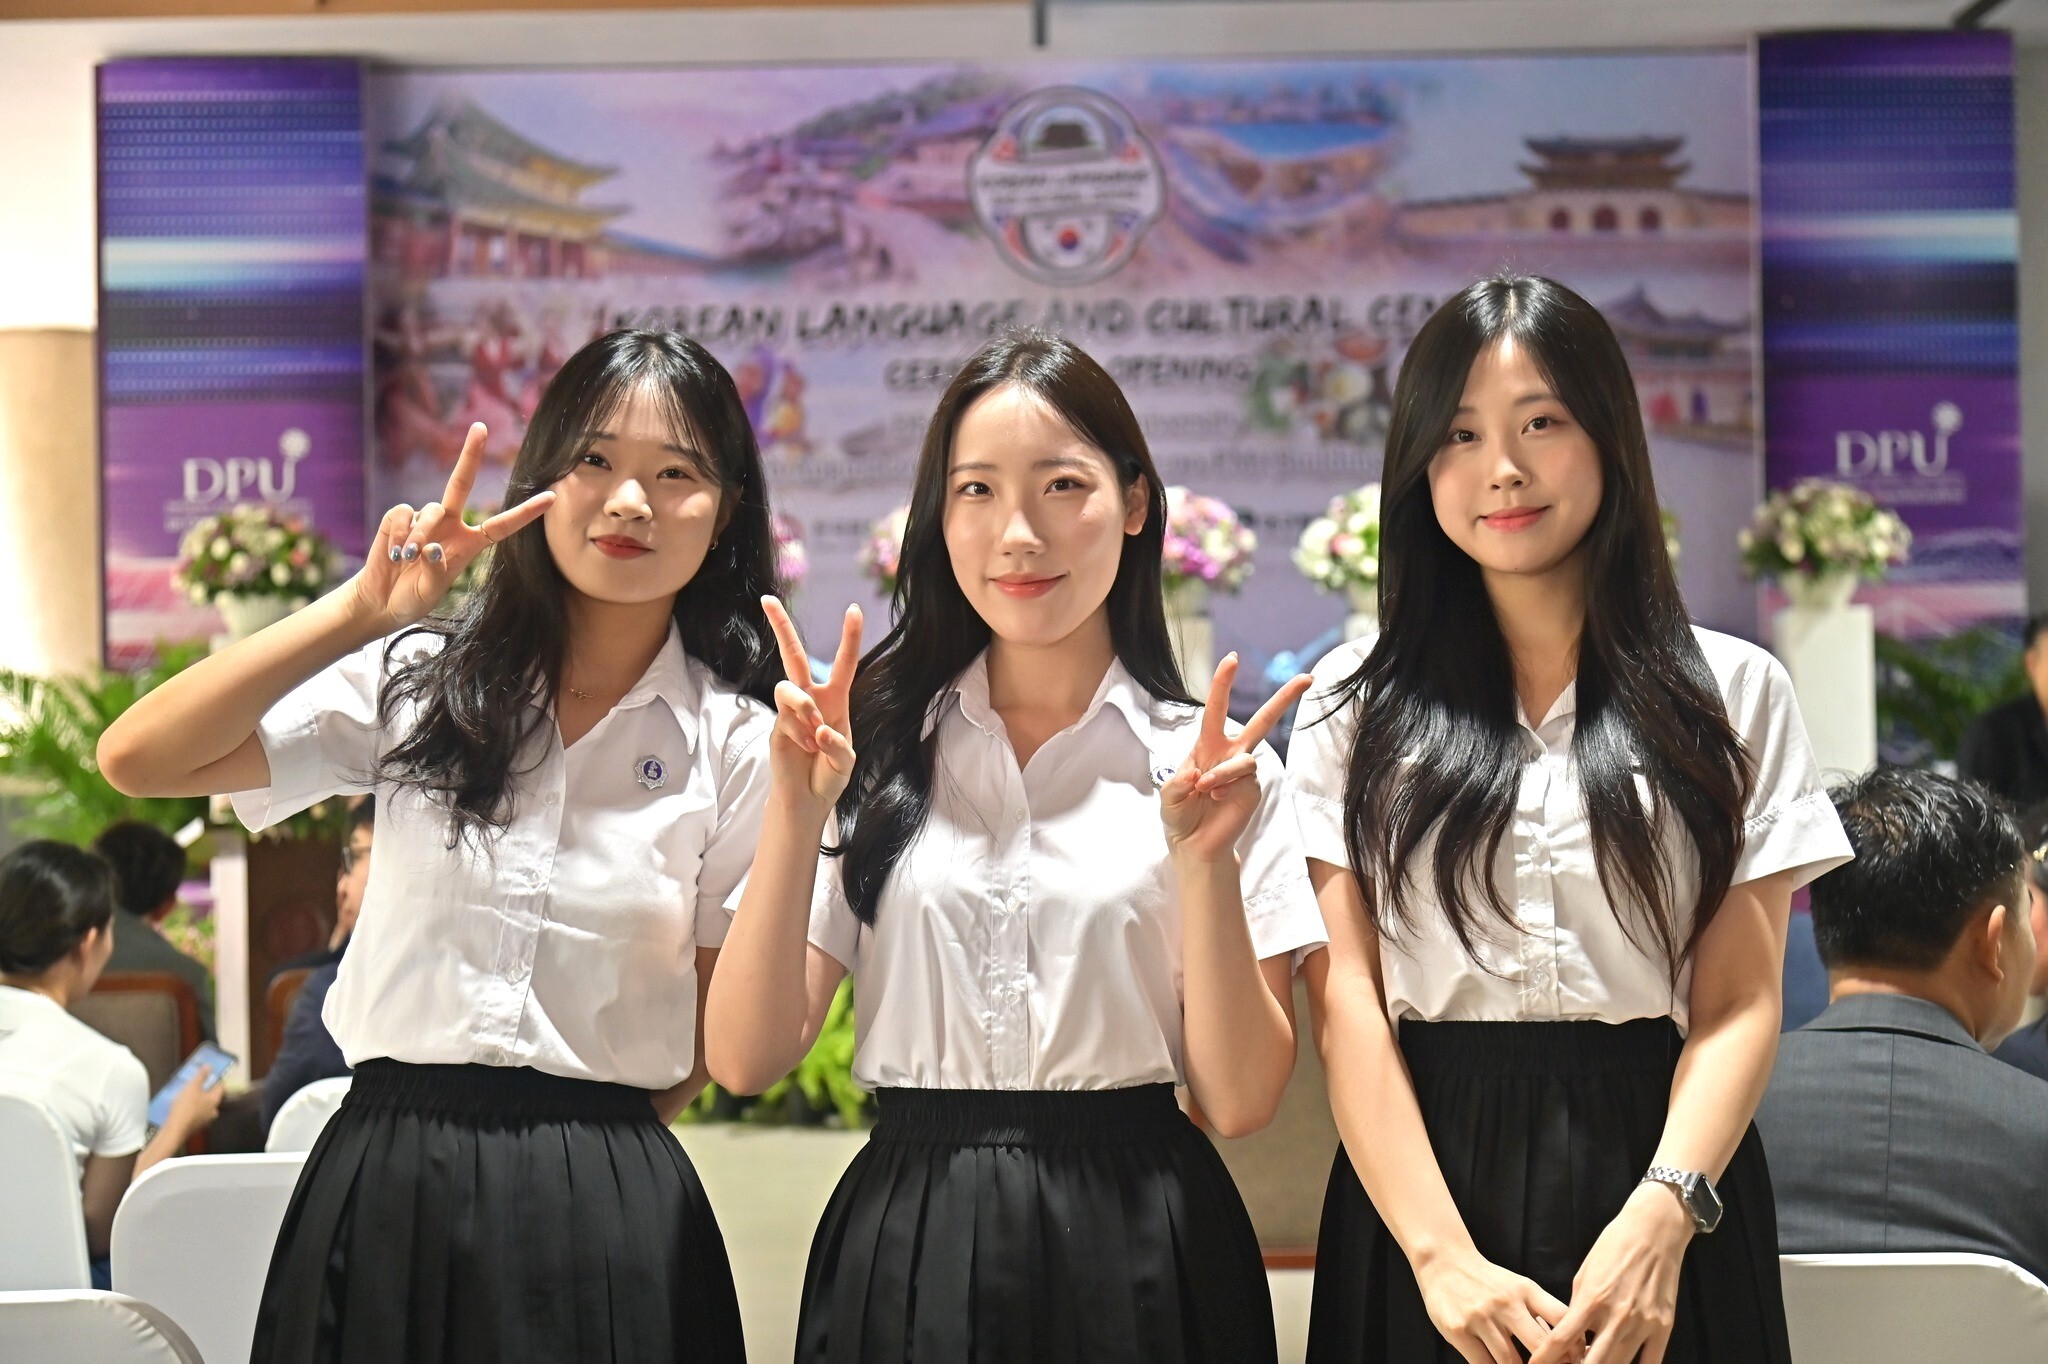 ว.นานาชาติ DPU จับมือ ม.ดังเกาหลี เตรียมเปิดหลักสูตรภาษาเกาหลี 2+2 เรียนทั้งที่ไทย-เกาหลี พร้อมรับปริญญา 2 ใบ